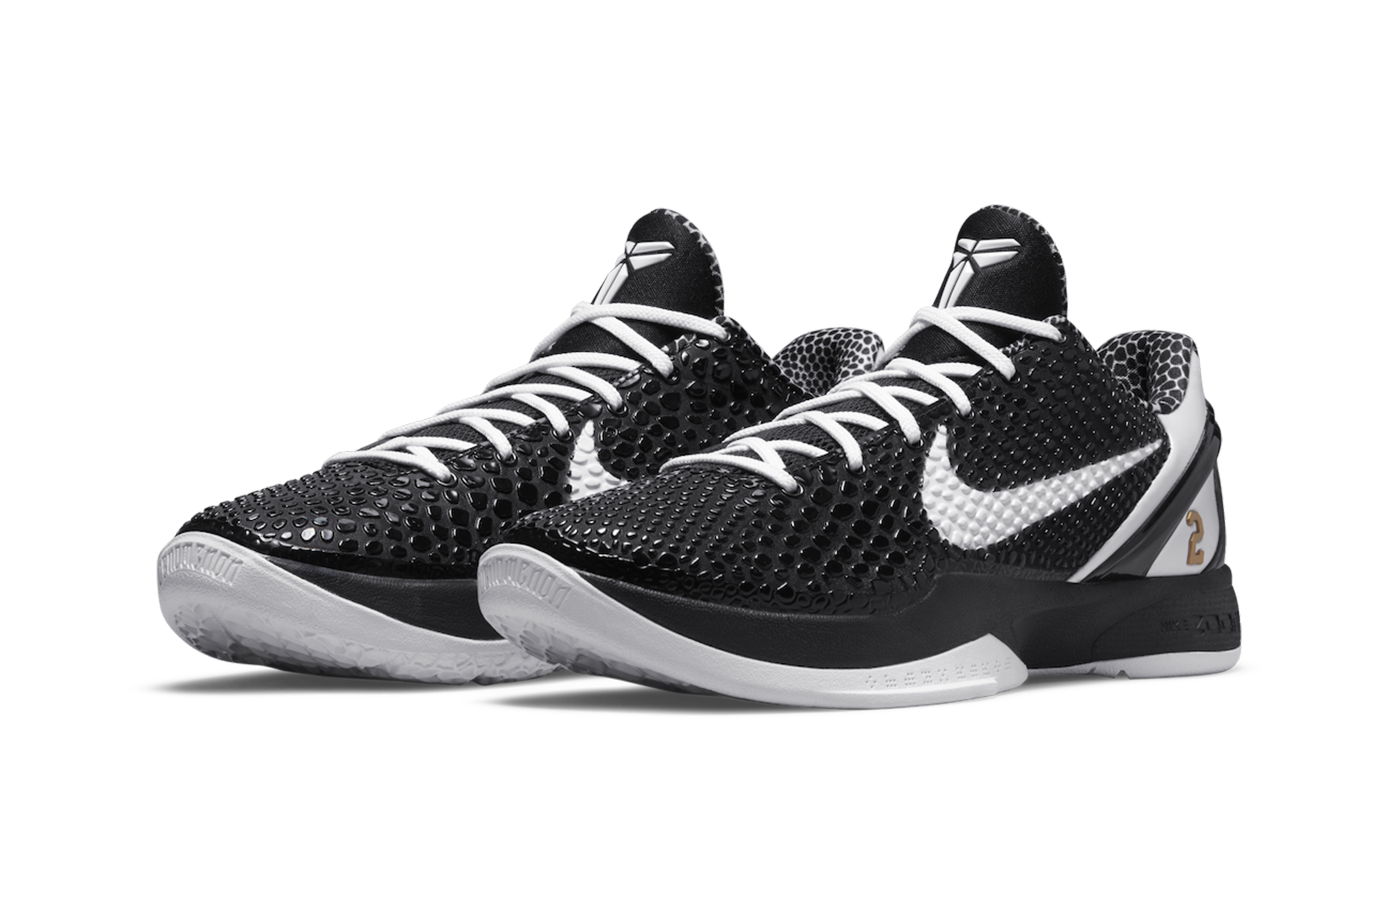 A New Nike Kobe Model Is Releasing Soon